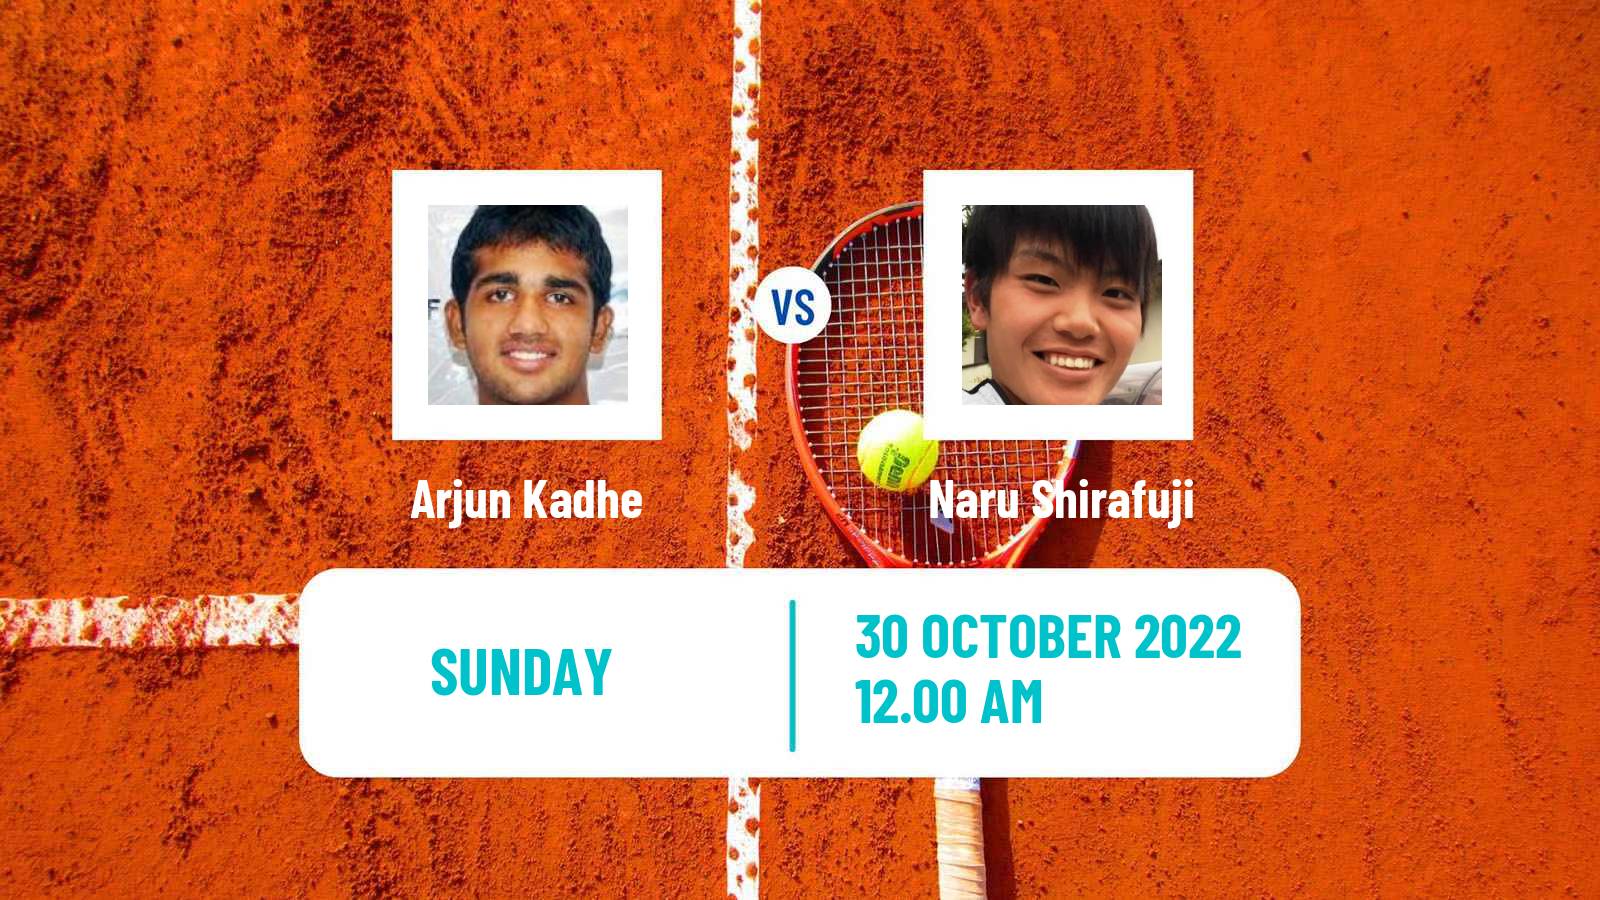 Tennis ATP Challenger Arjun Kadhe - Naru Shirafuji